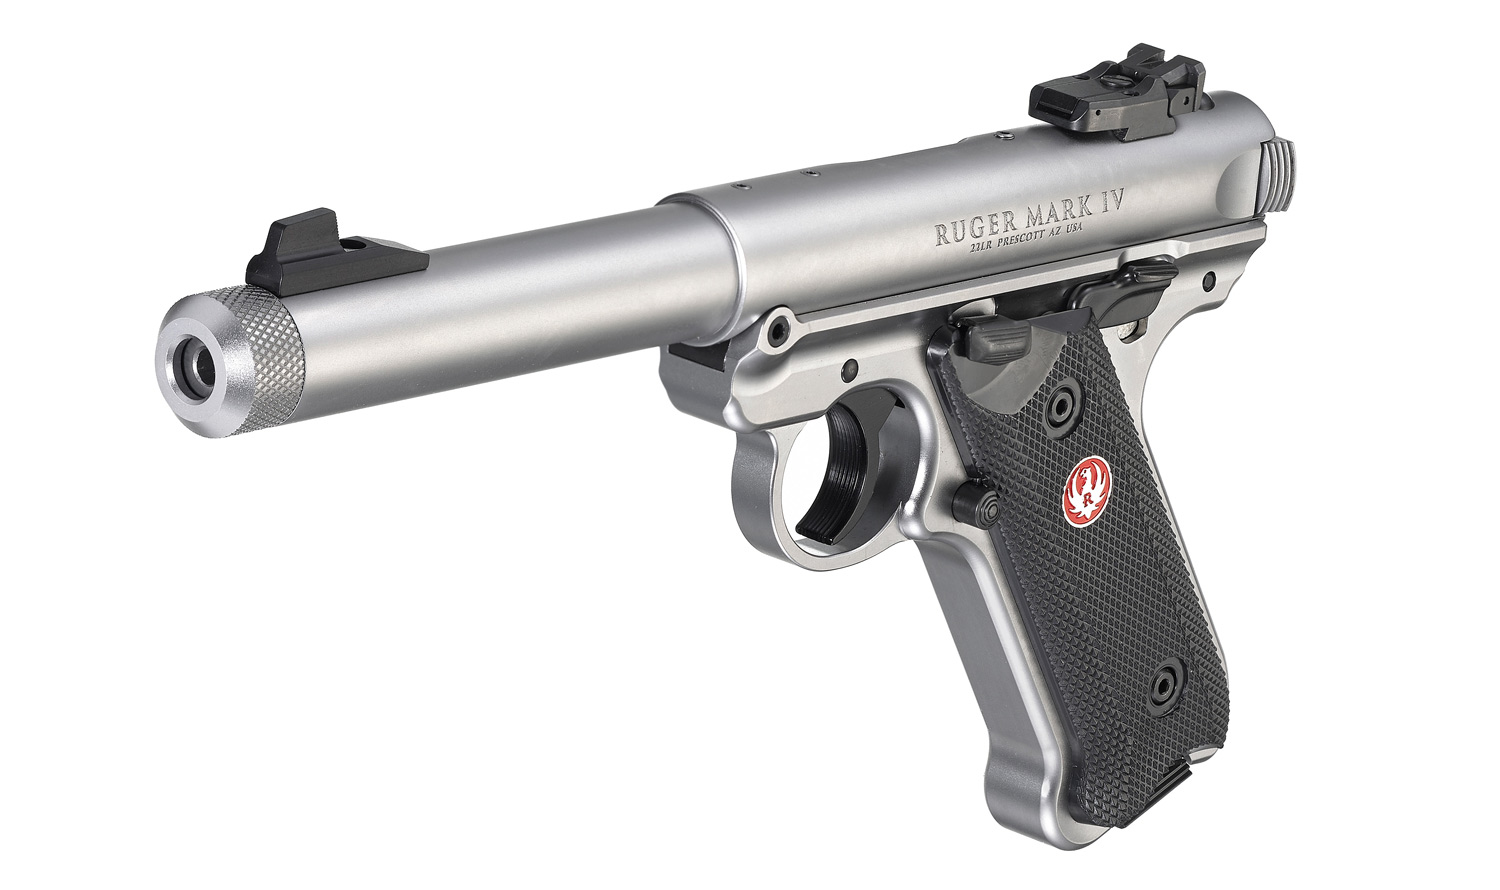 Related image of Ruger Mark Iv Target Rimfire Pistol Model 40126.